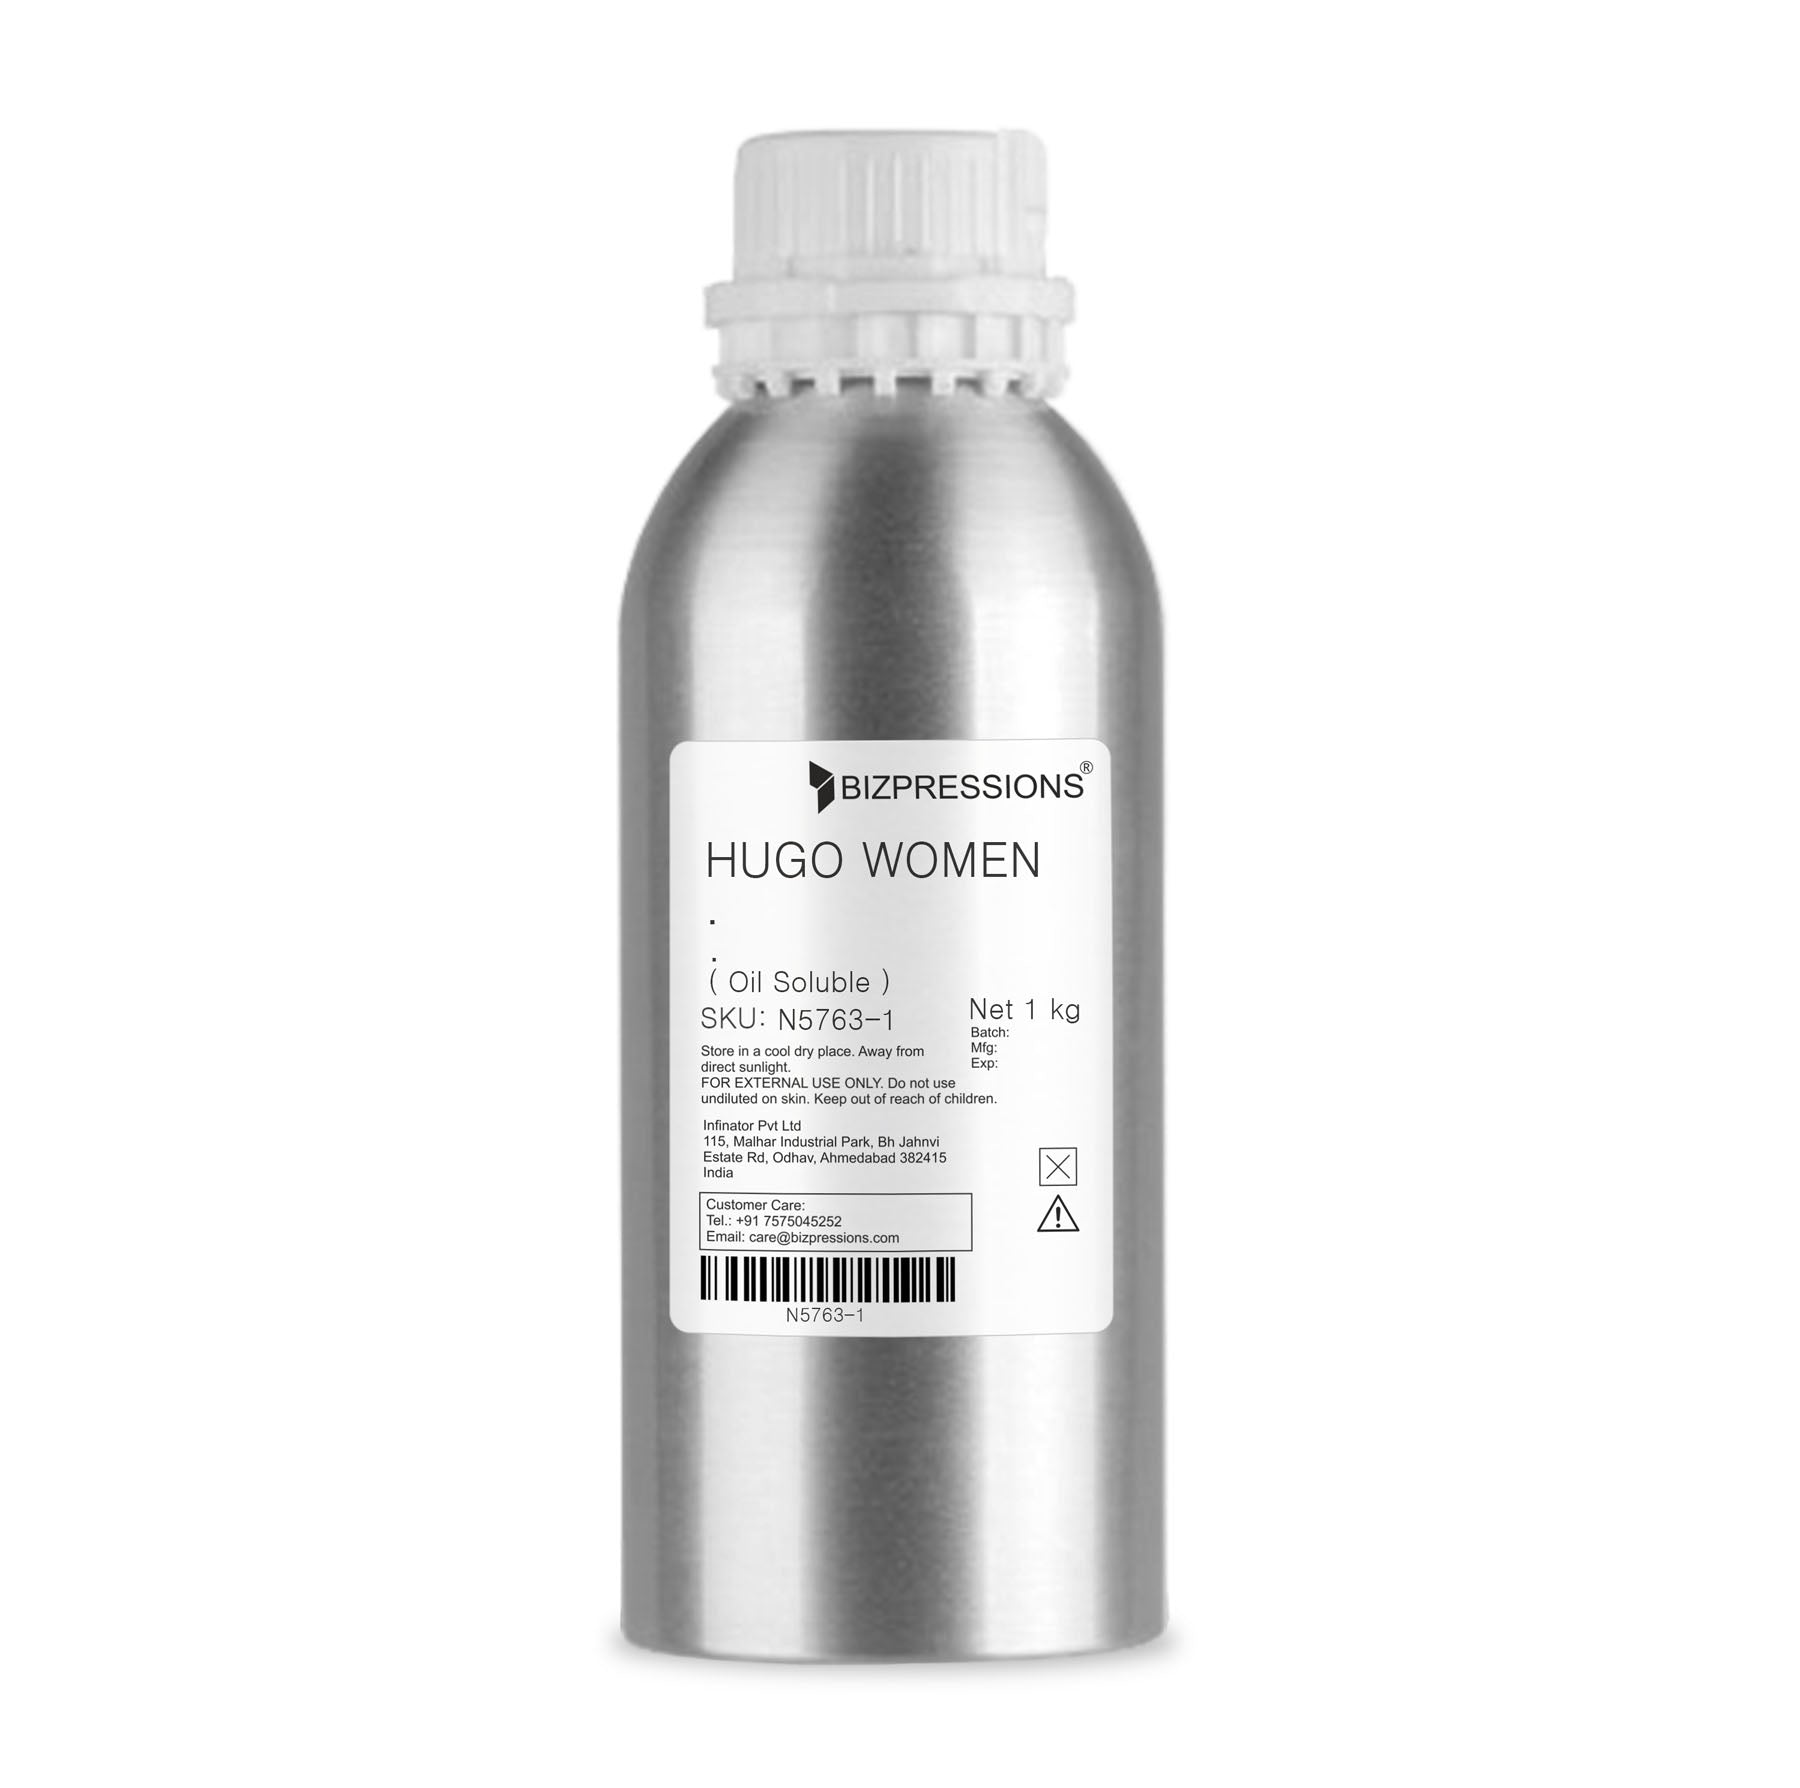 HUGO WOMEN - Fragrance ( Oil Soluble ) - 1 kg